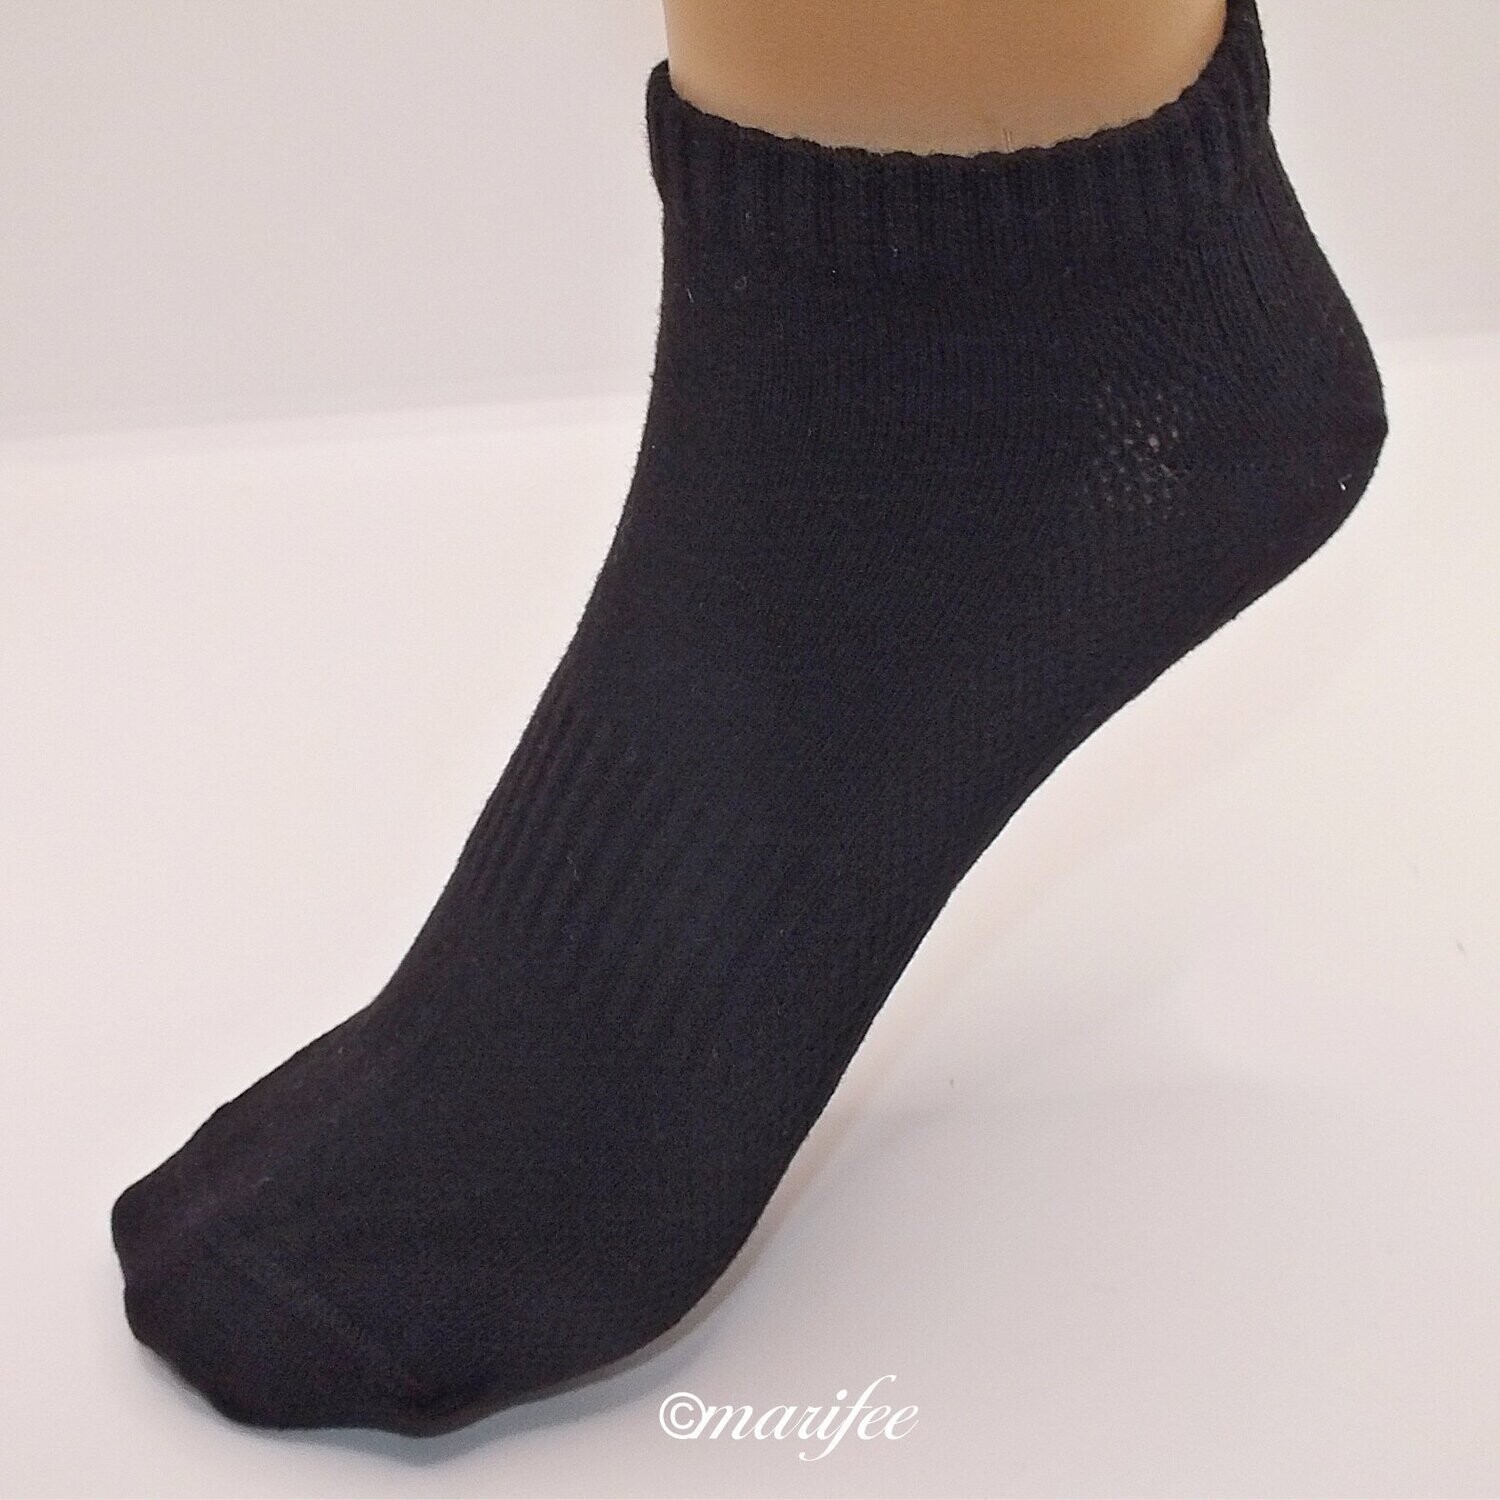 Sneaker-Socken Mesh, Unisex, gekämmte Baumwolle 3 Paar Weiss, Grau, Schwarz Gr. 43-46